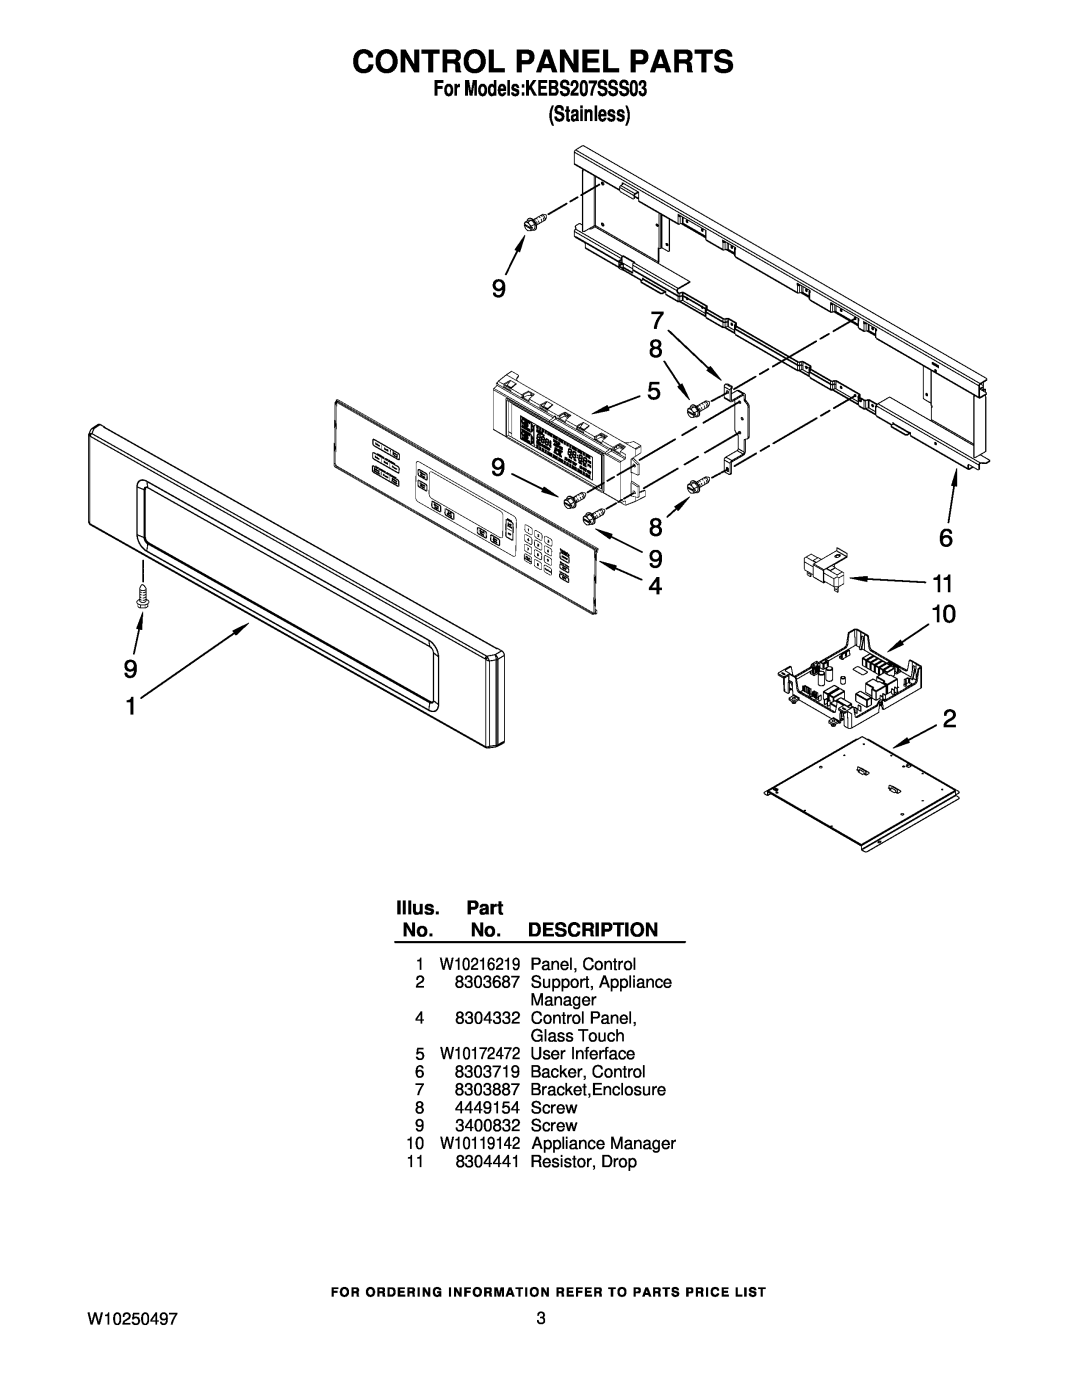 KitchenAid KEBS207SSS03 manual Control Panel Parts, Illus. Part No. No. DESCRIPTION, 11 8304441 Resistor, Drop, W10250497 